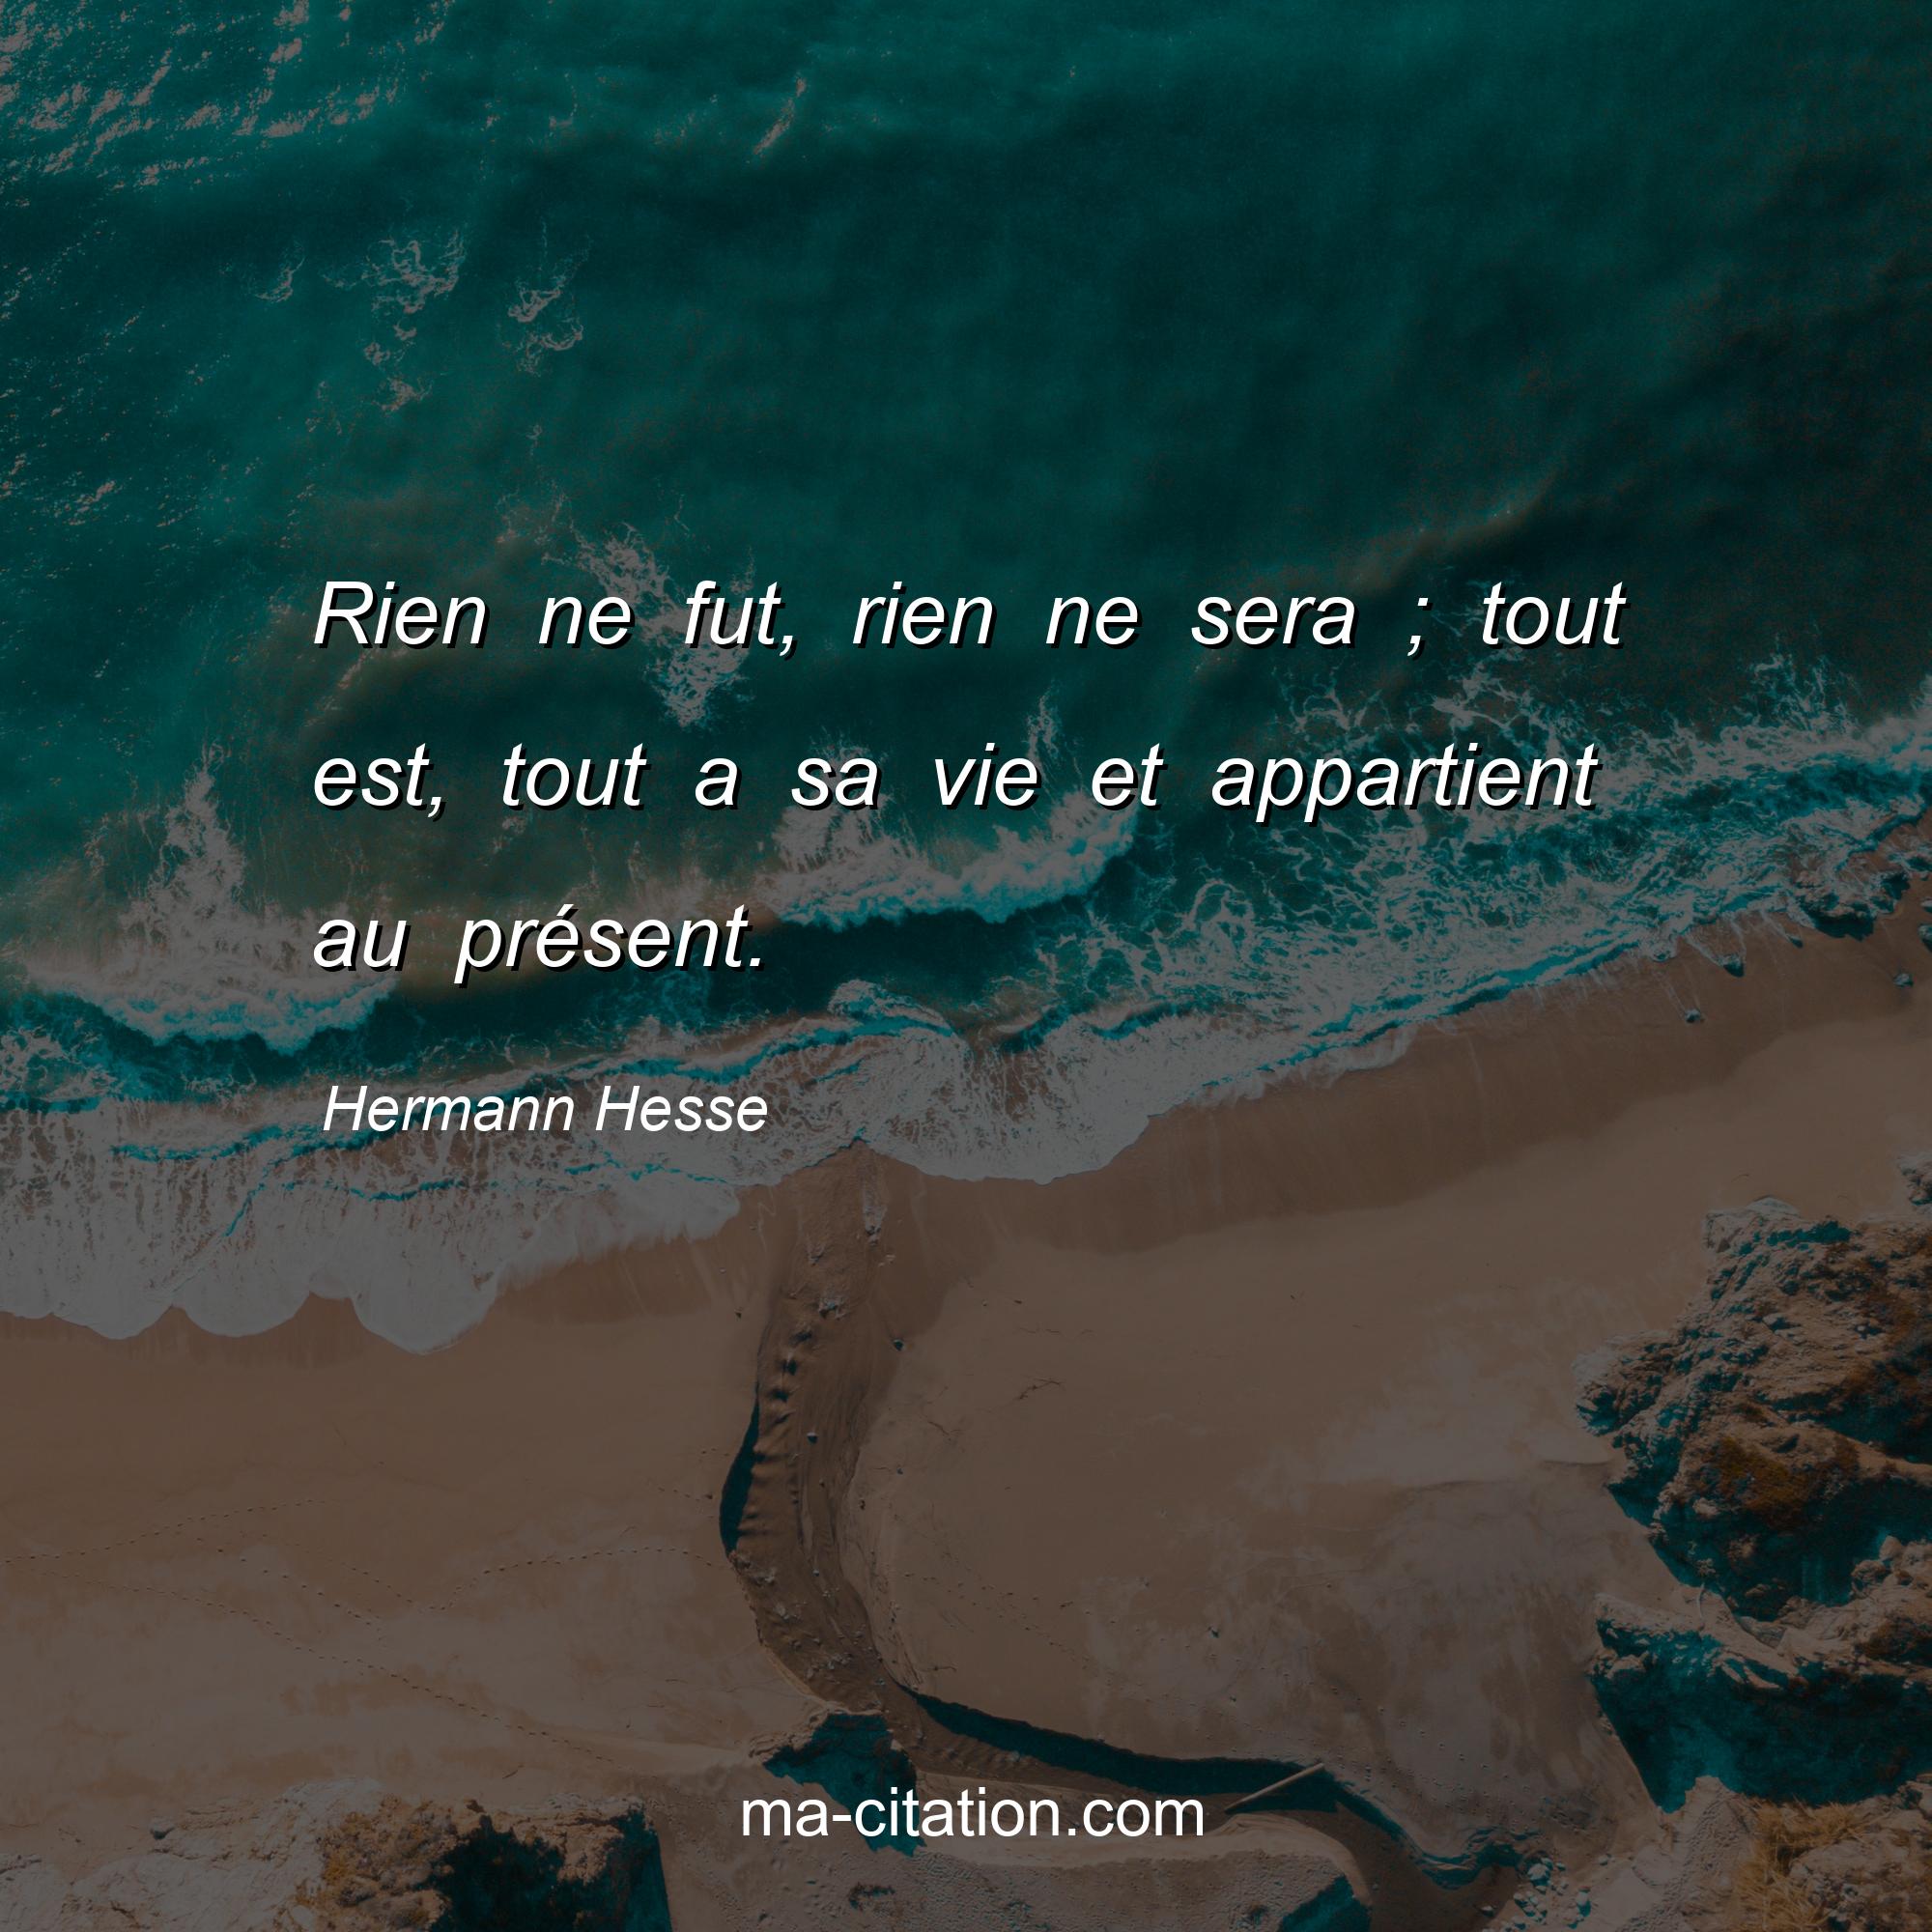 Hermann Hesse : Rien ne fut, rien ne sera ; tout est, tout a sa vie et appartient au présent.